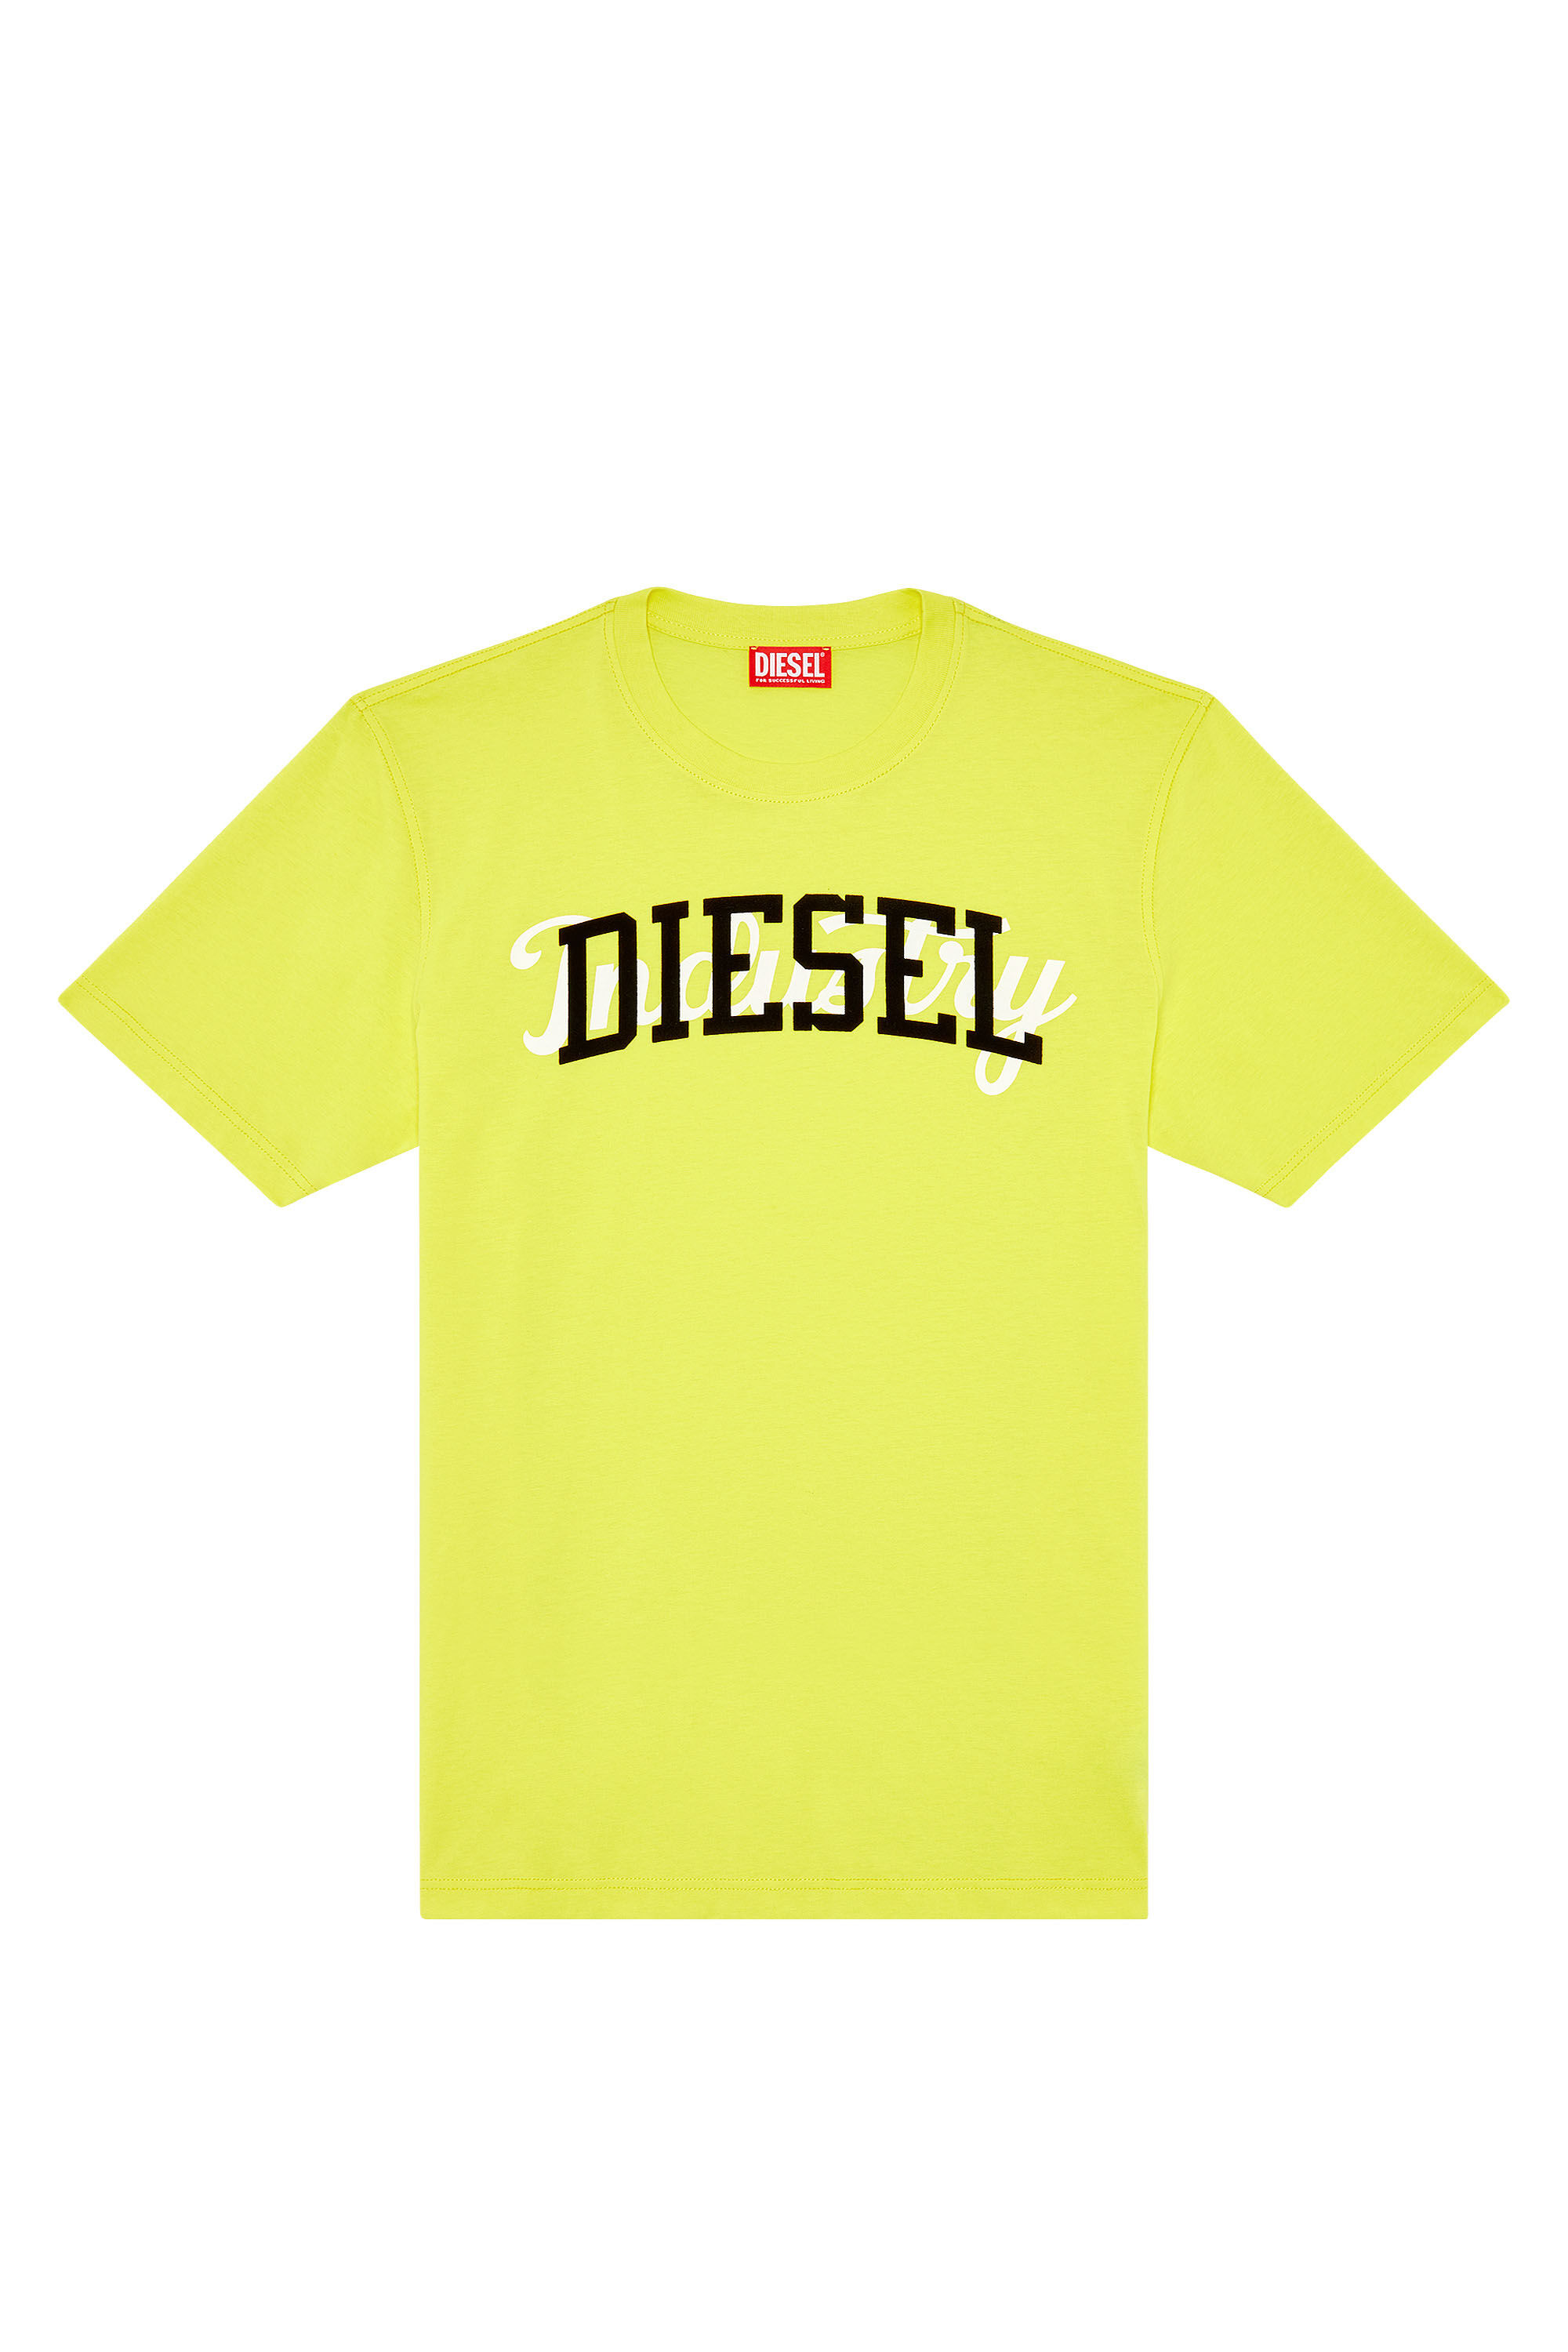 Diesel - T-JUST-N10, Yellow - Image 2